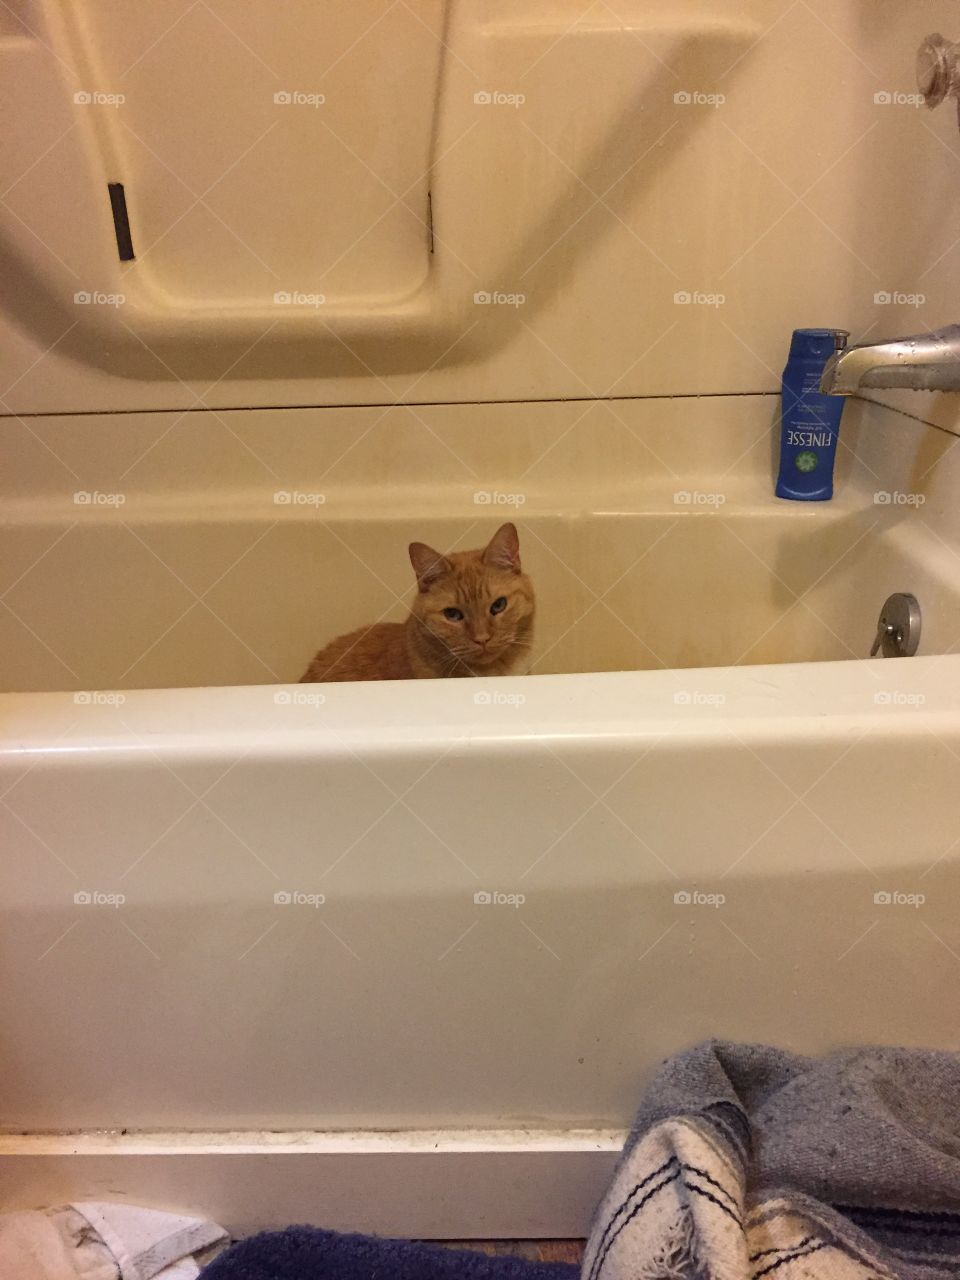 Maybe bath? 